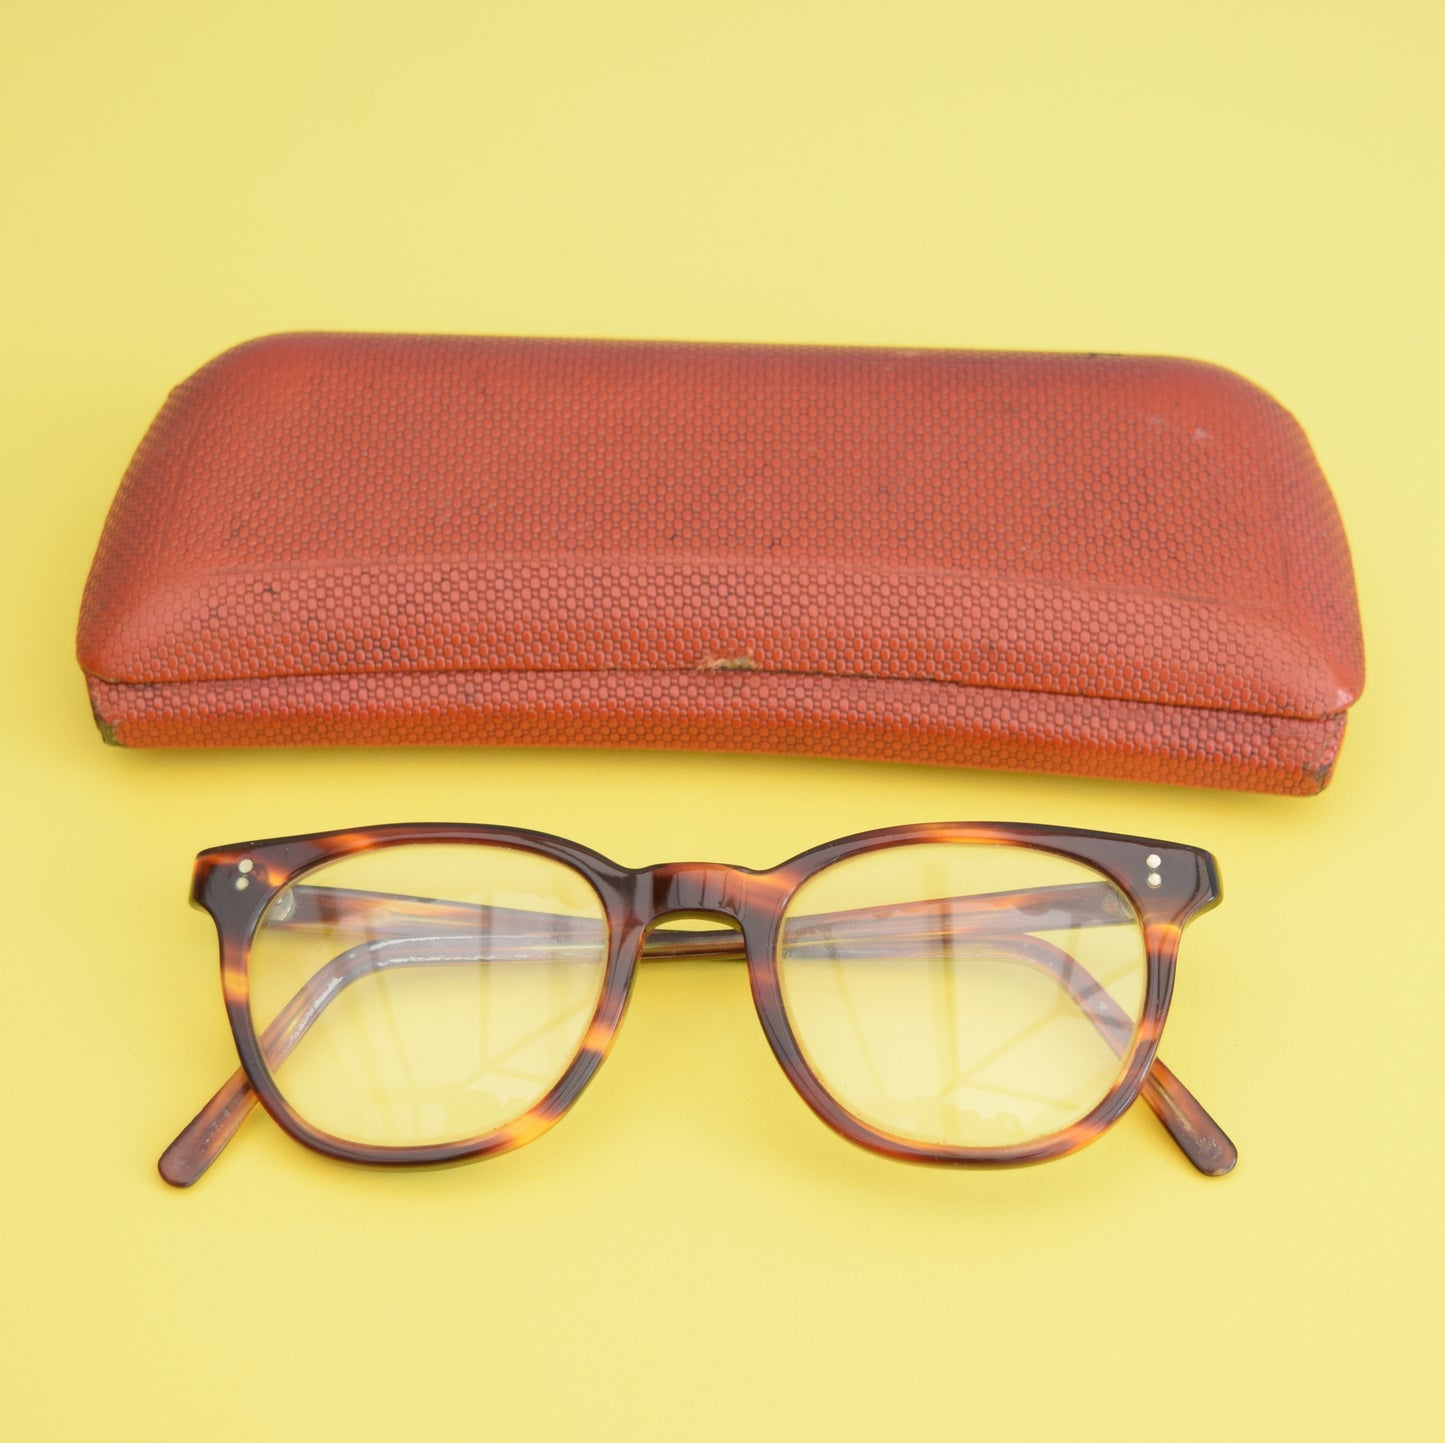 Vintage 1950s  Reading Glasses & Case - Tortoise Shell Effect Lucite Frames